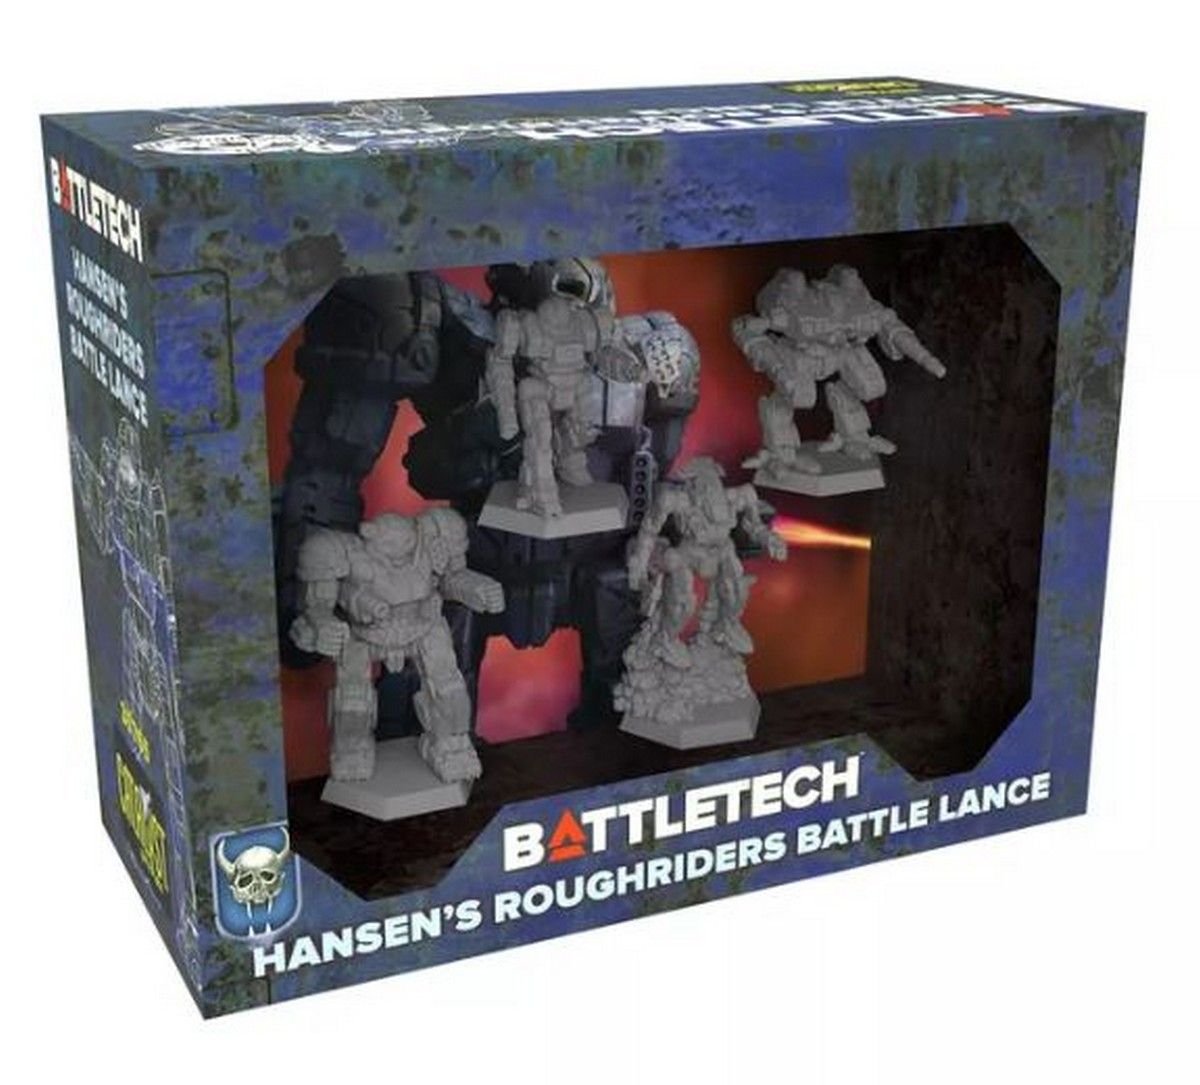 BattleTech: Hansens Roughriders Battle Lance